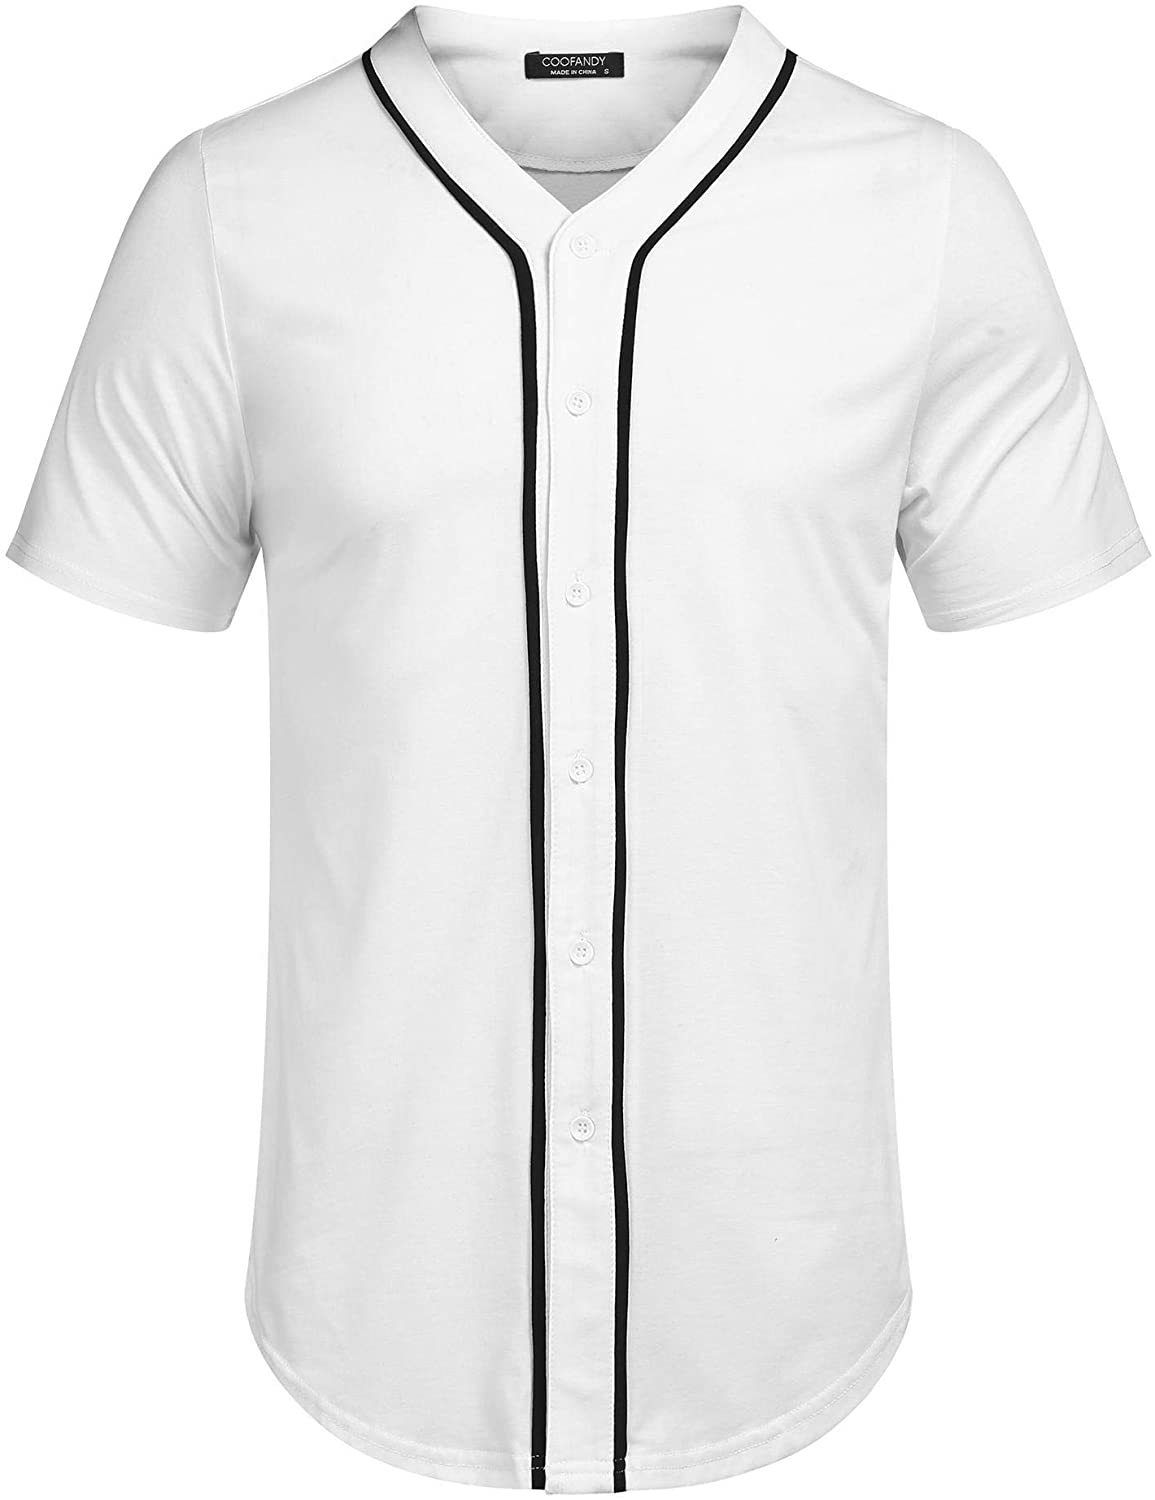 COOFANDY Men's Baseball Button Down Jersey Short Sleeve Hipster Hip Hop T Shirts 